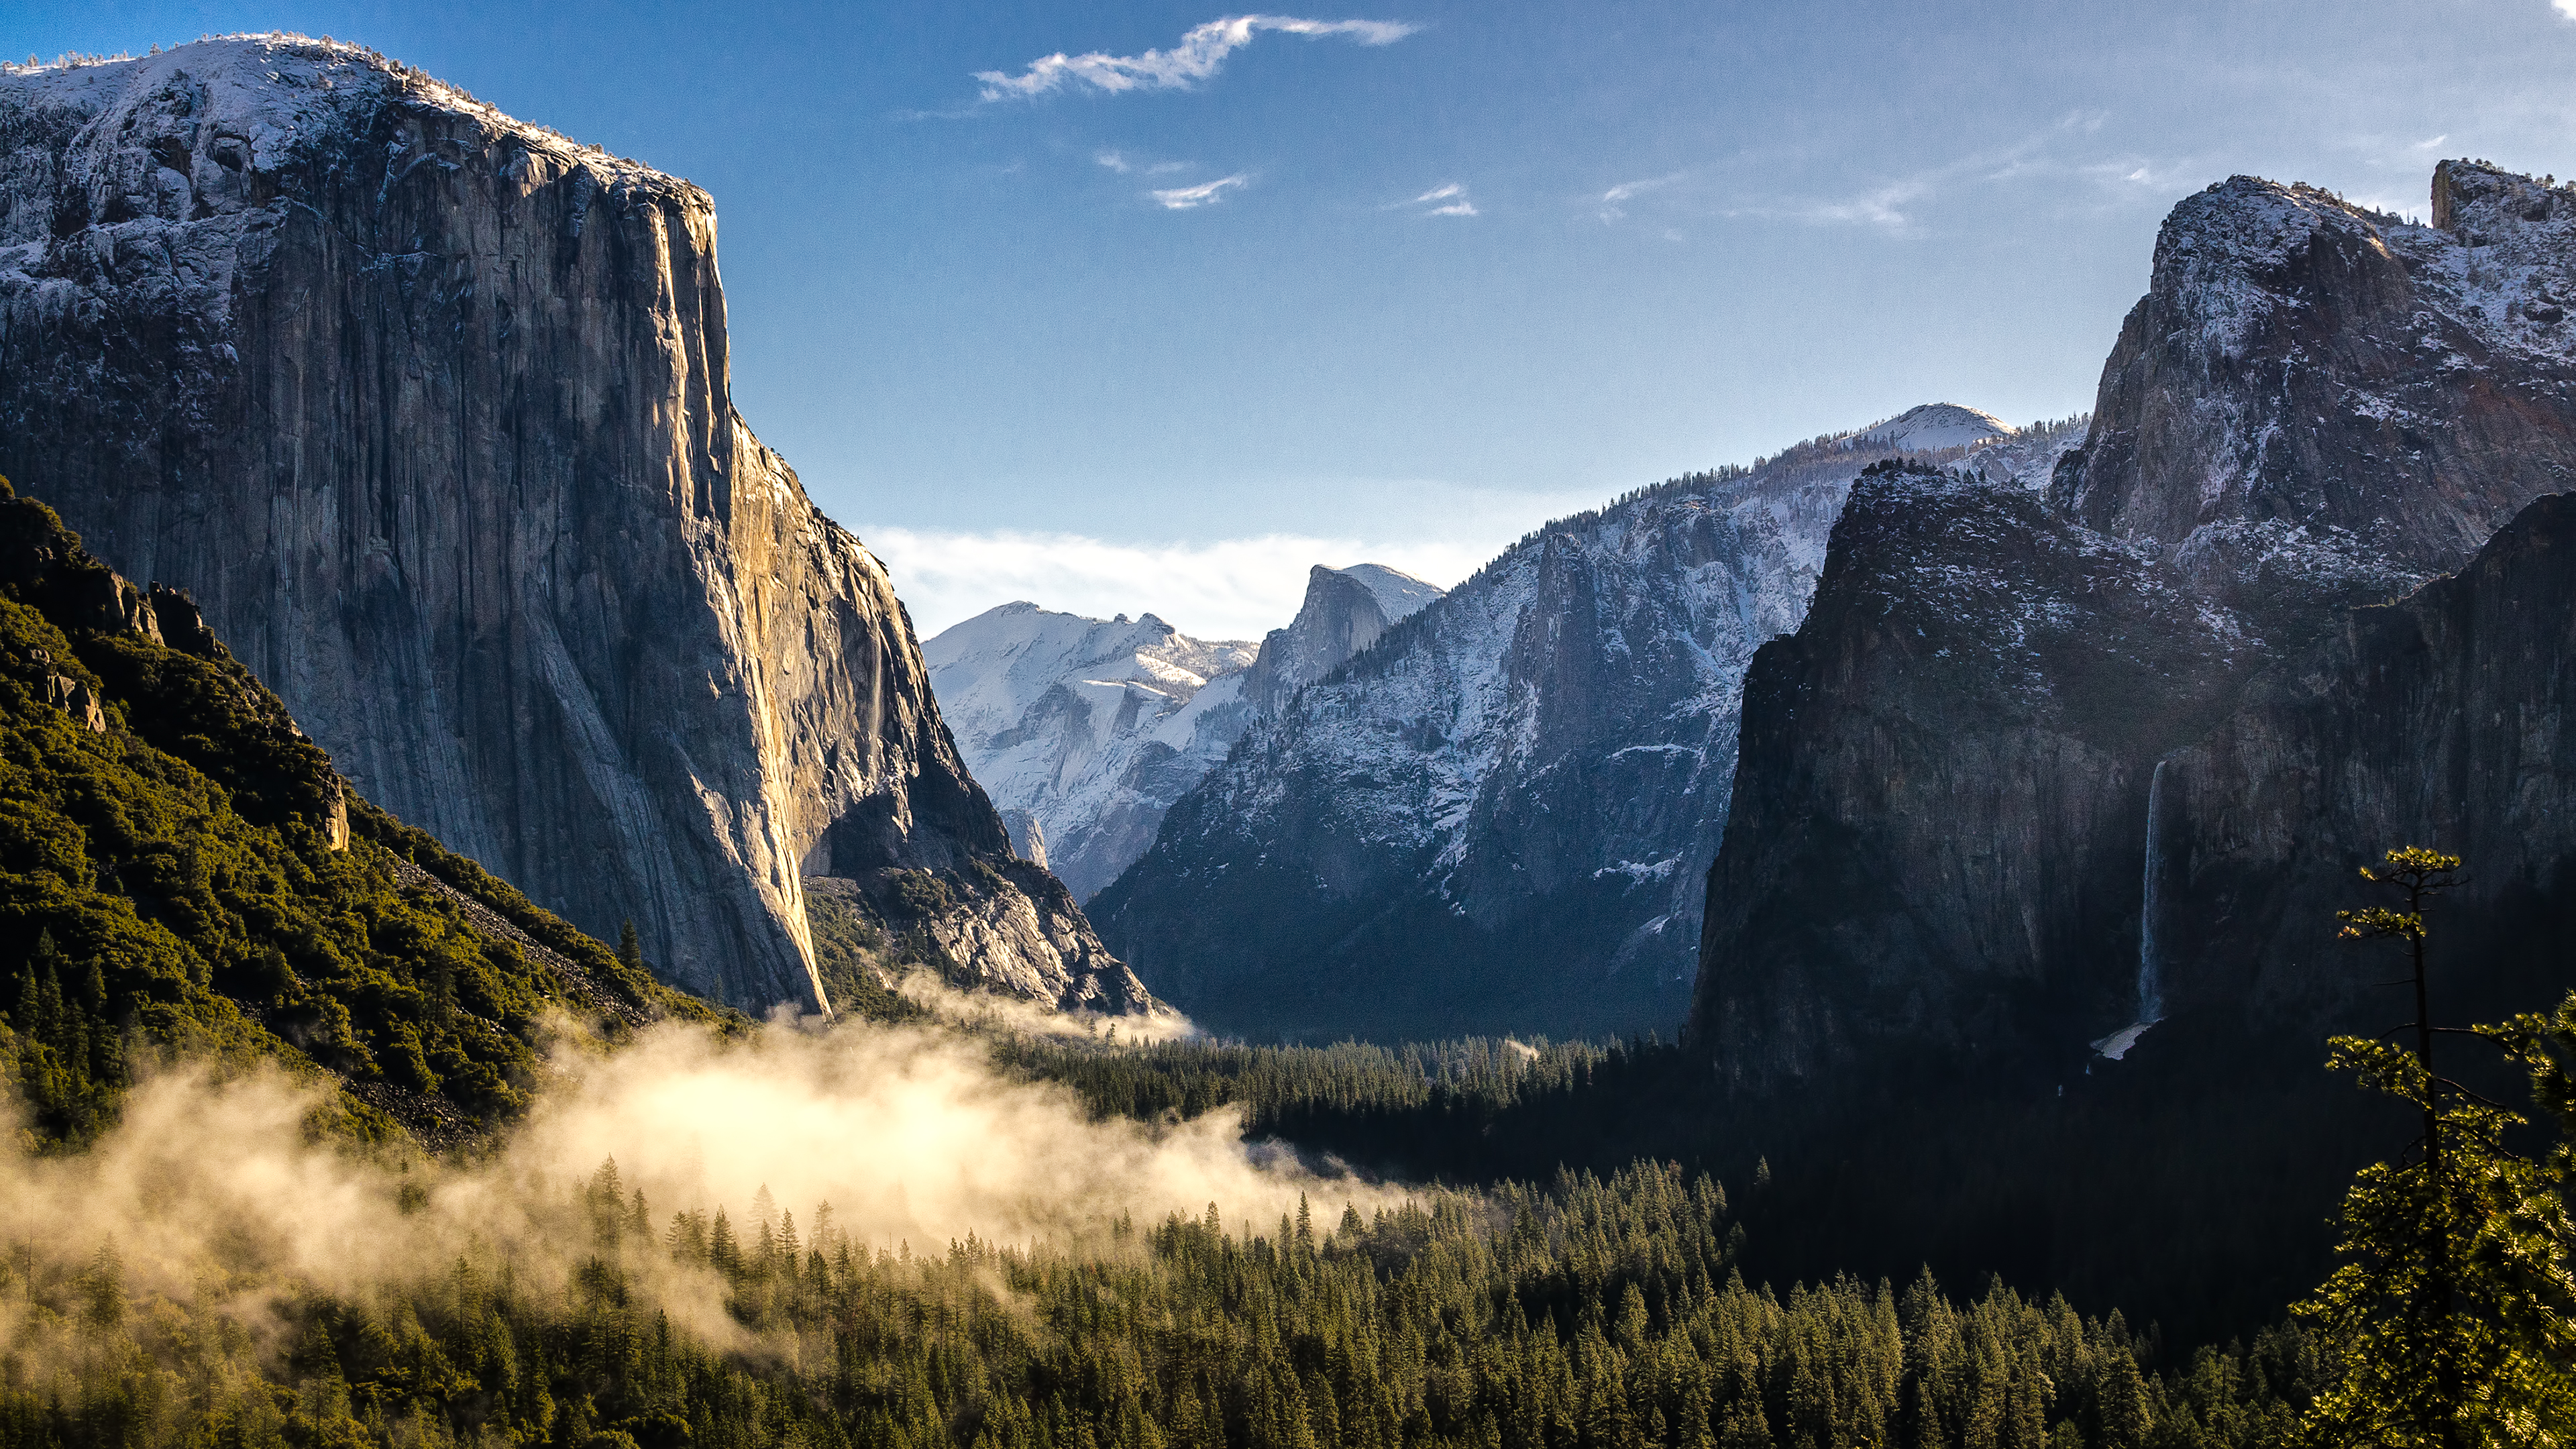 Hình nền Yosemite 4K đẹp tựa như bức tranh thiên nhiên tuyệt đẹp được vẽ bằng sắc màu vô cùng sống động. Khi bạn sử dụng hình nền này, không chỉ làm cho màn hình của bạn trở nên cuốn hút hơn mà còn giúp bạn thư giãn và khám phá vẻ đẹp hoang sơ của rừng Yosemite.